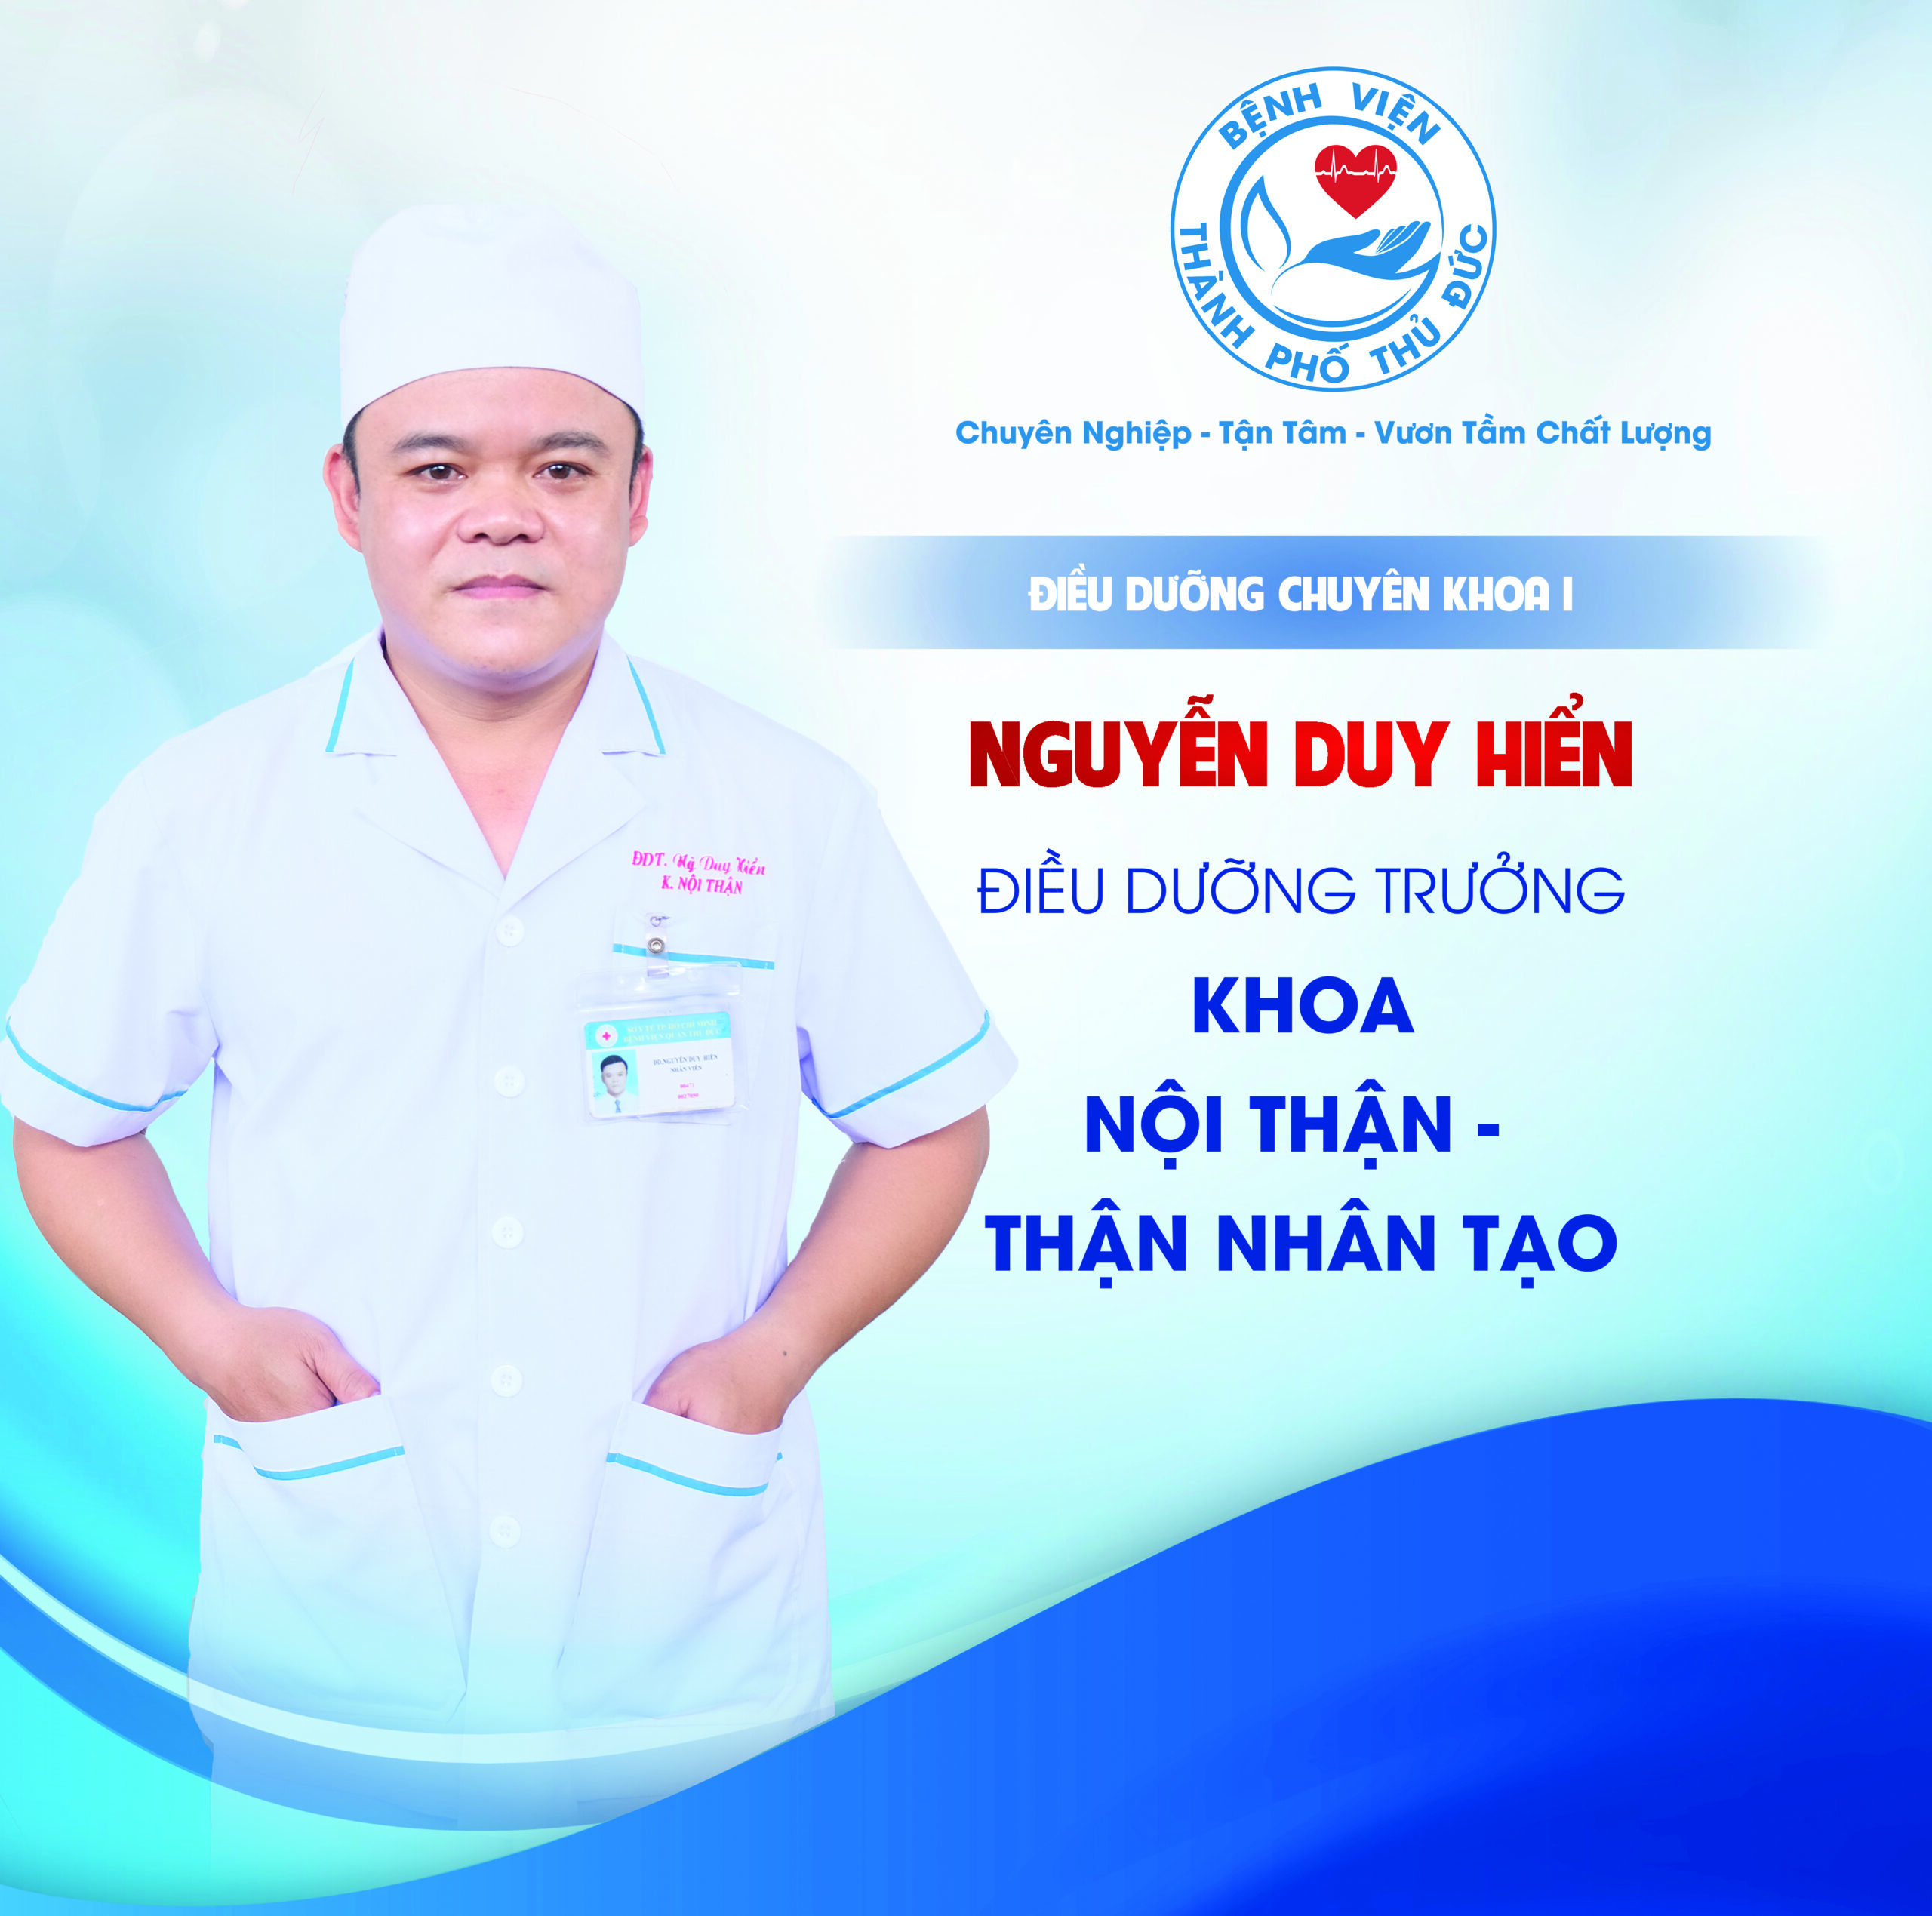 CNĐD. Nguyễn Duy Hiển - Điều dưỡng Trưởng khoa Nội thận - Thận nhân tạo